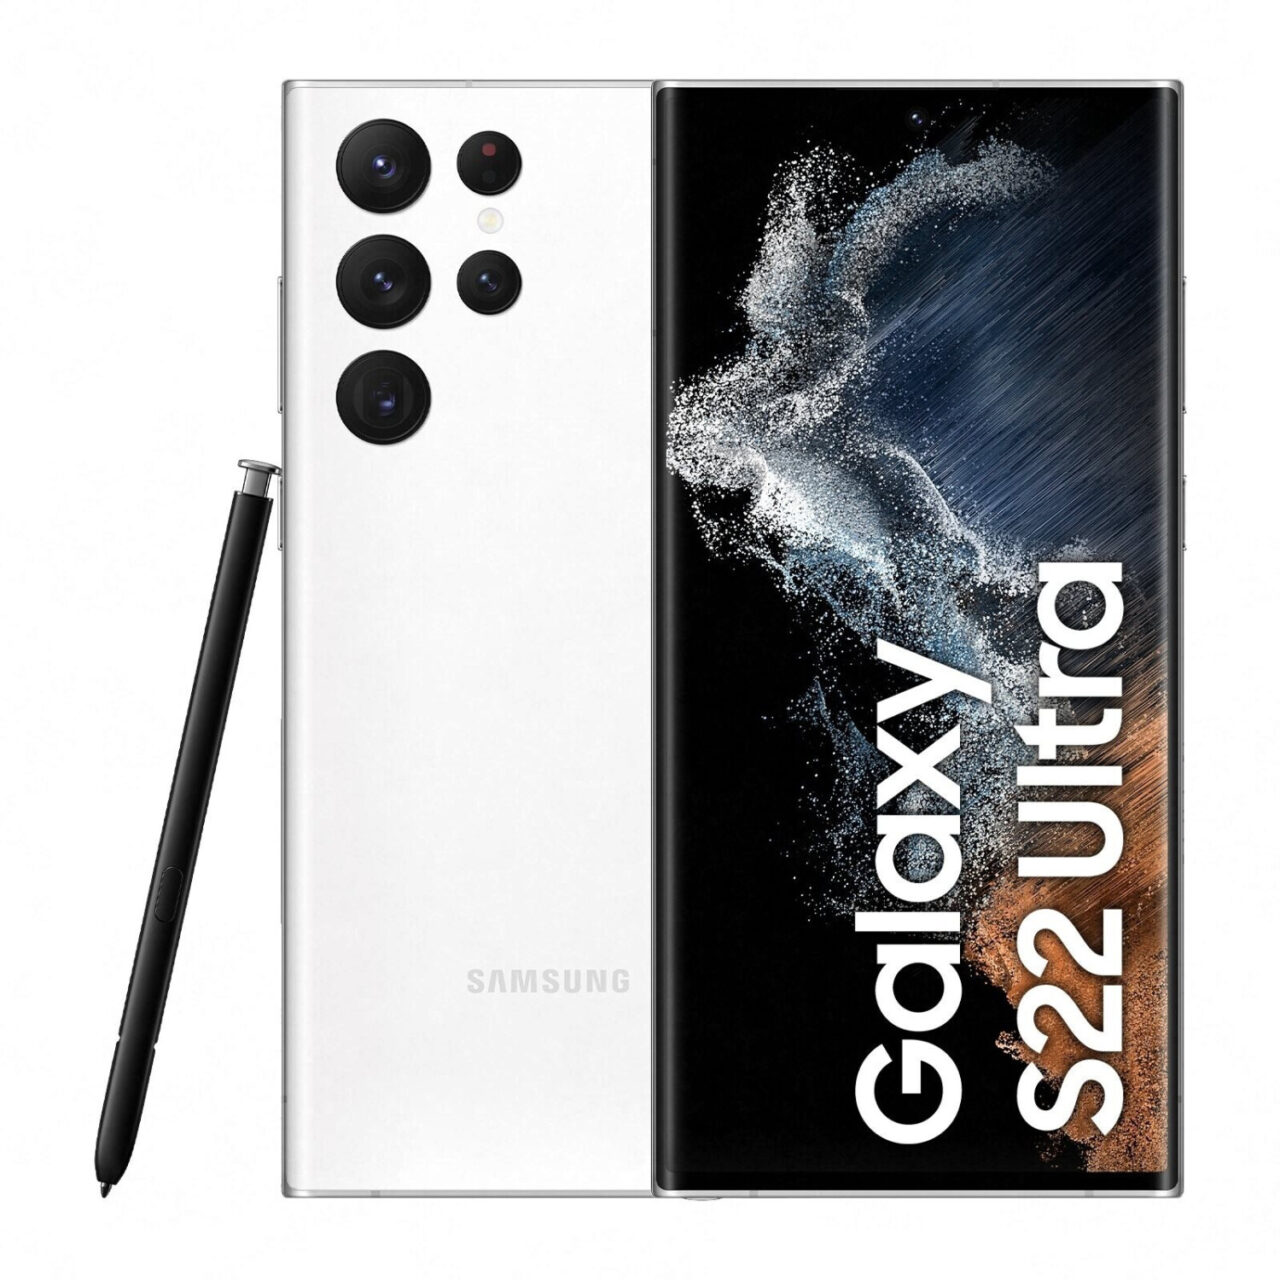 Samsung Galaxy S22 Ultra w kolorze białym z piórem S Pen obok, ukazujący tył telefonu z pięcioma obiektywami kamery i przednią część z ekranem wyświetlającym grafikę kosmosu oraz nazwę modelu.